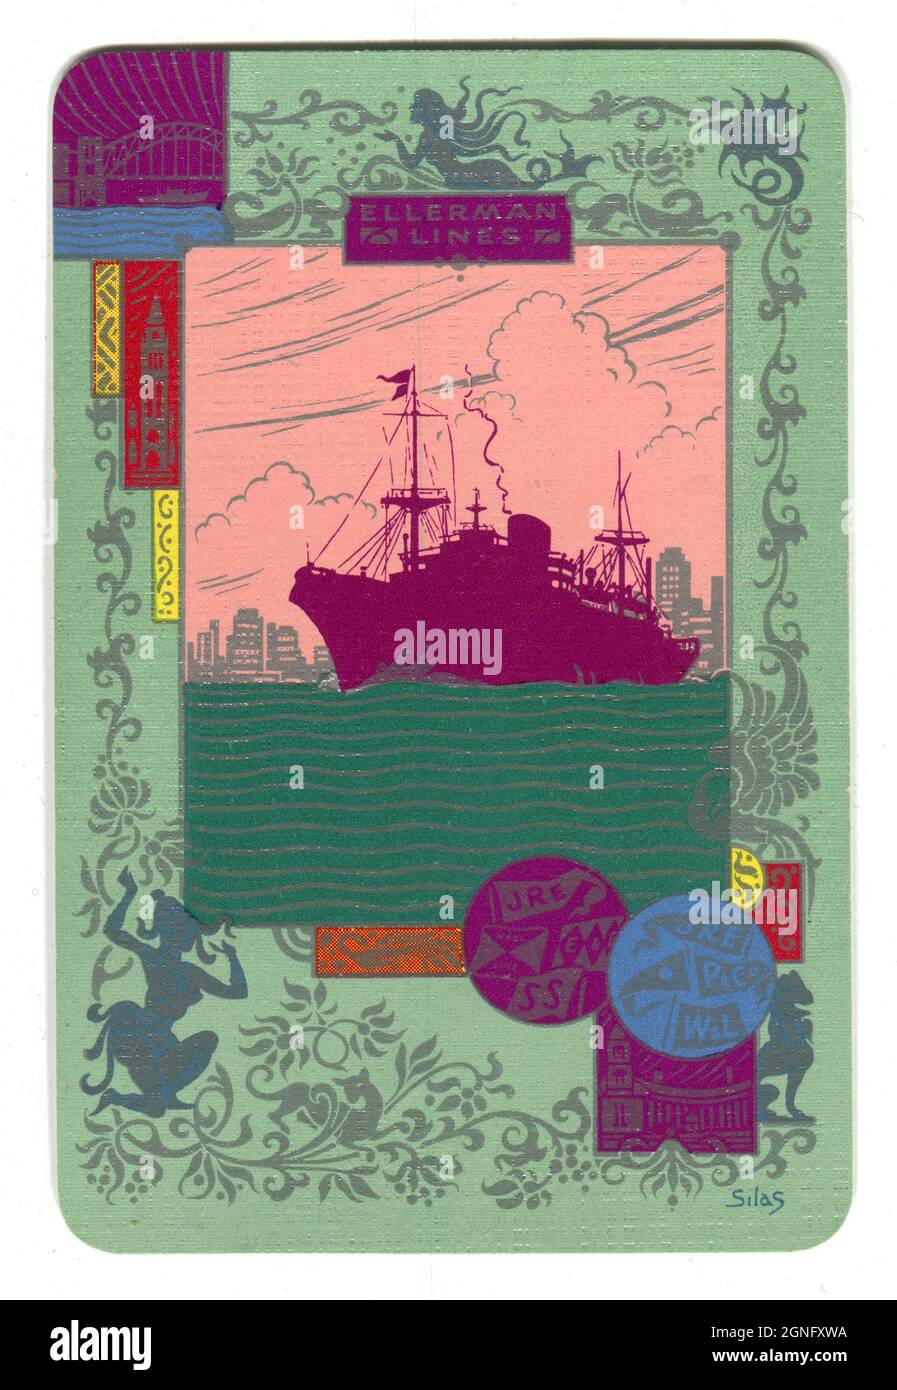 Une carte à jouer vintage datant des années 1930 faisant la promotion de la compagnie maritime britannique «Ellerman Lines». L'esthétique Art déco représente une silhouette d'un navire Ellerman Lines qui navigue au-delà de l'horizon de New York. La conception intègre également les drapeaux des autres compagnies de transport maritime qu'Ellerman avait pris en charge. Banque D'Images